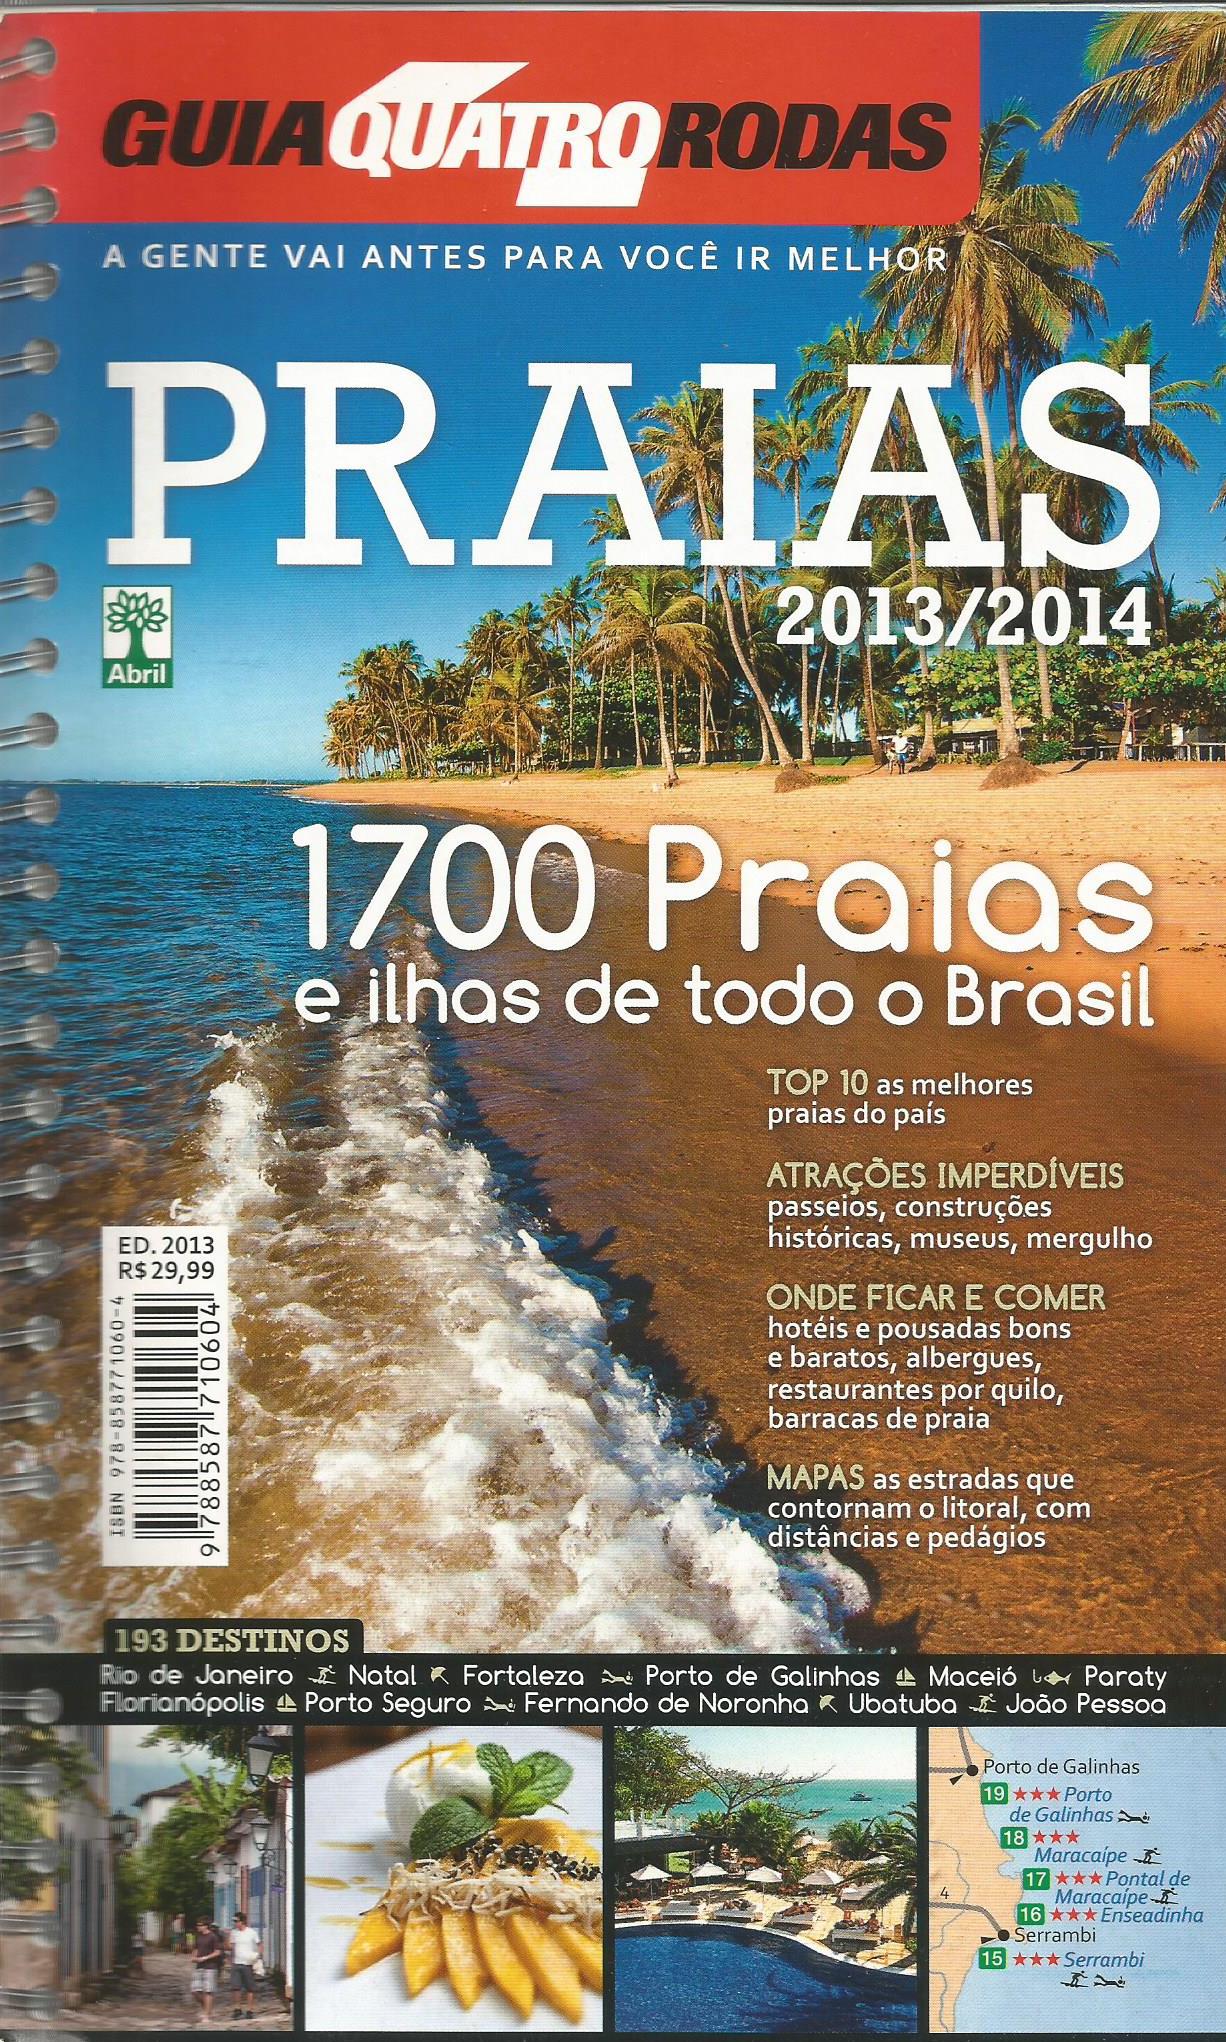 Guia Quatro Rodas – Praias 2013/2014